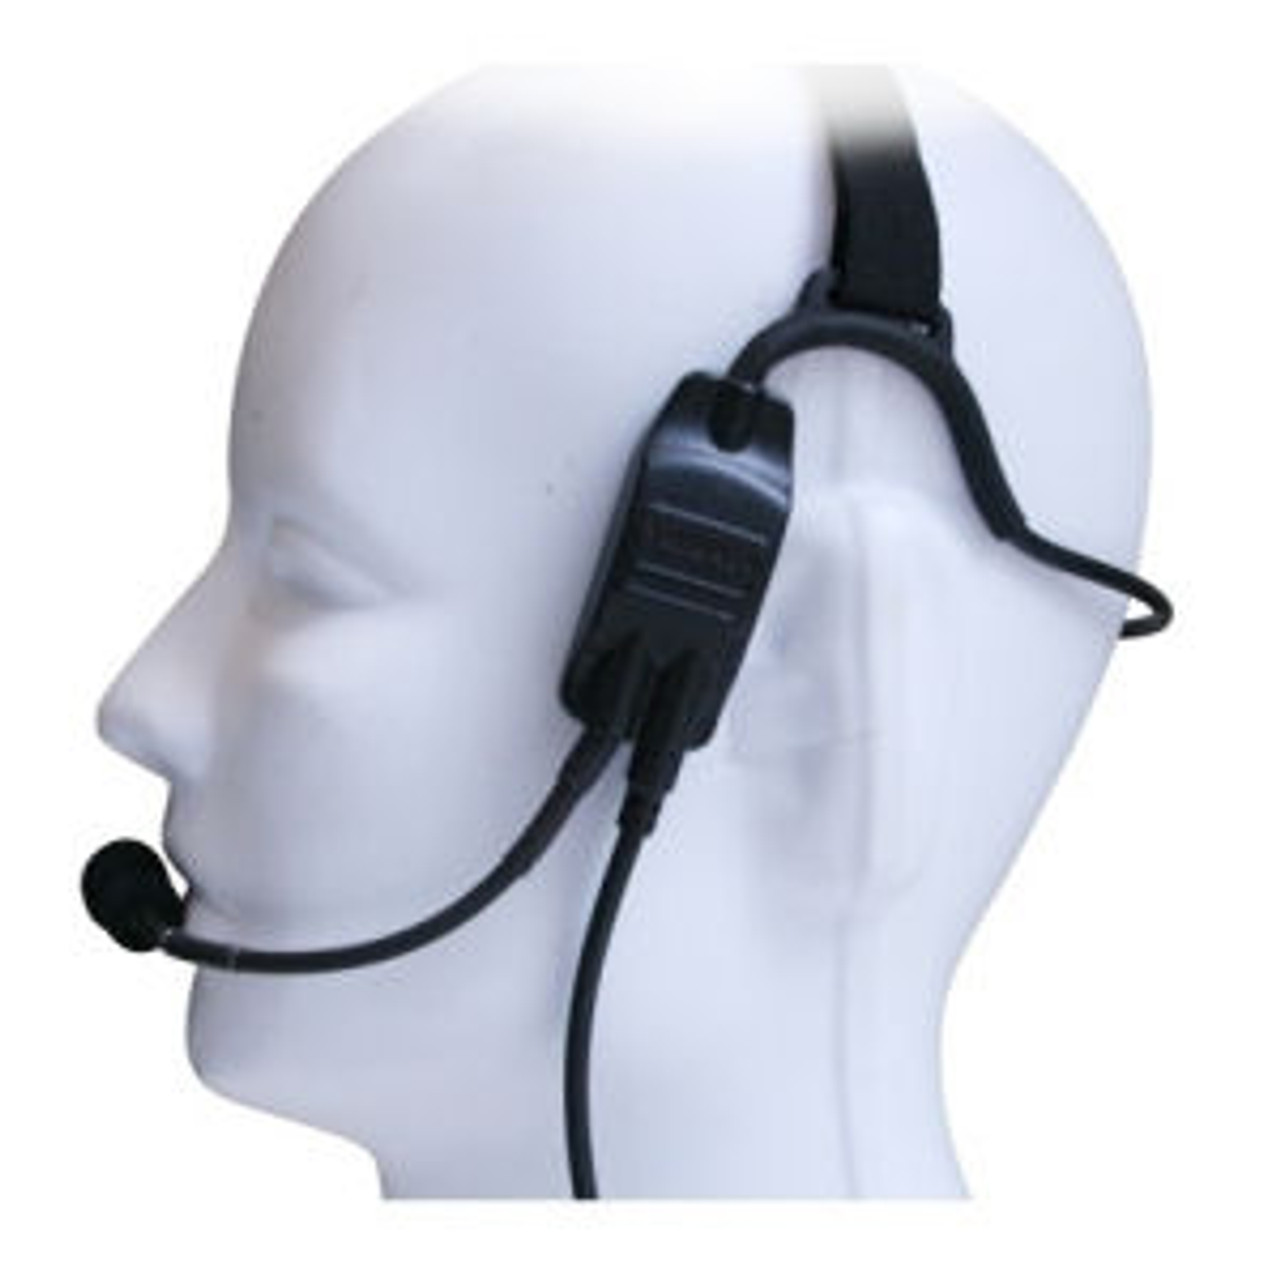 Kenwood TK-5220 Temple Transducer Headset